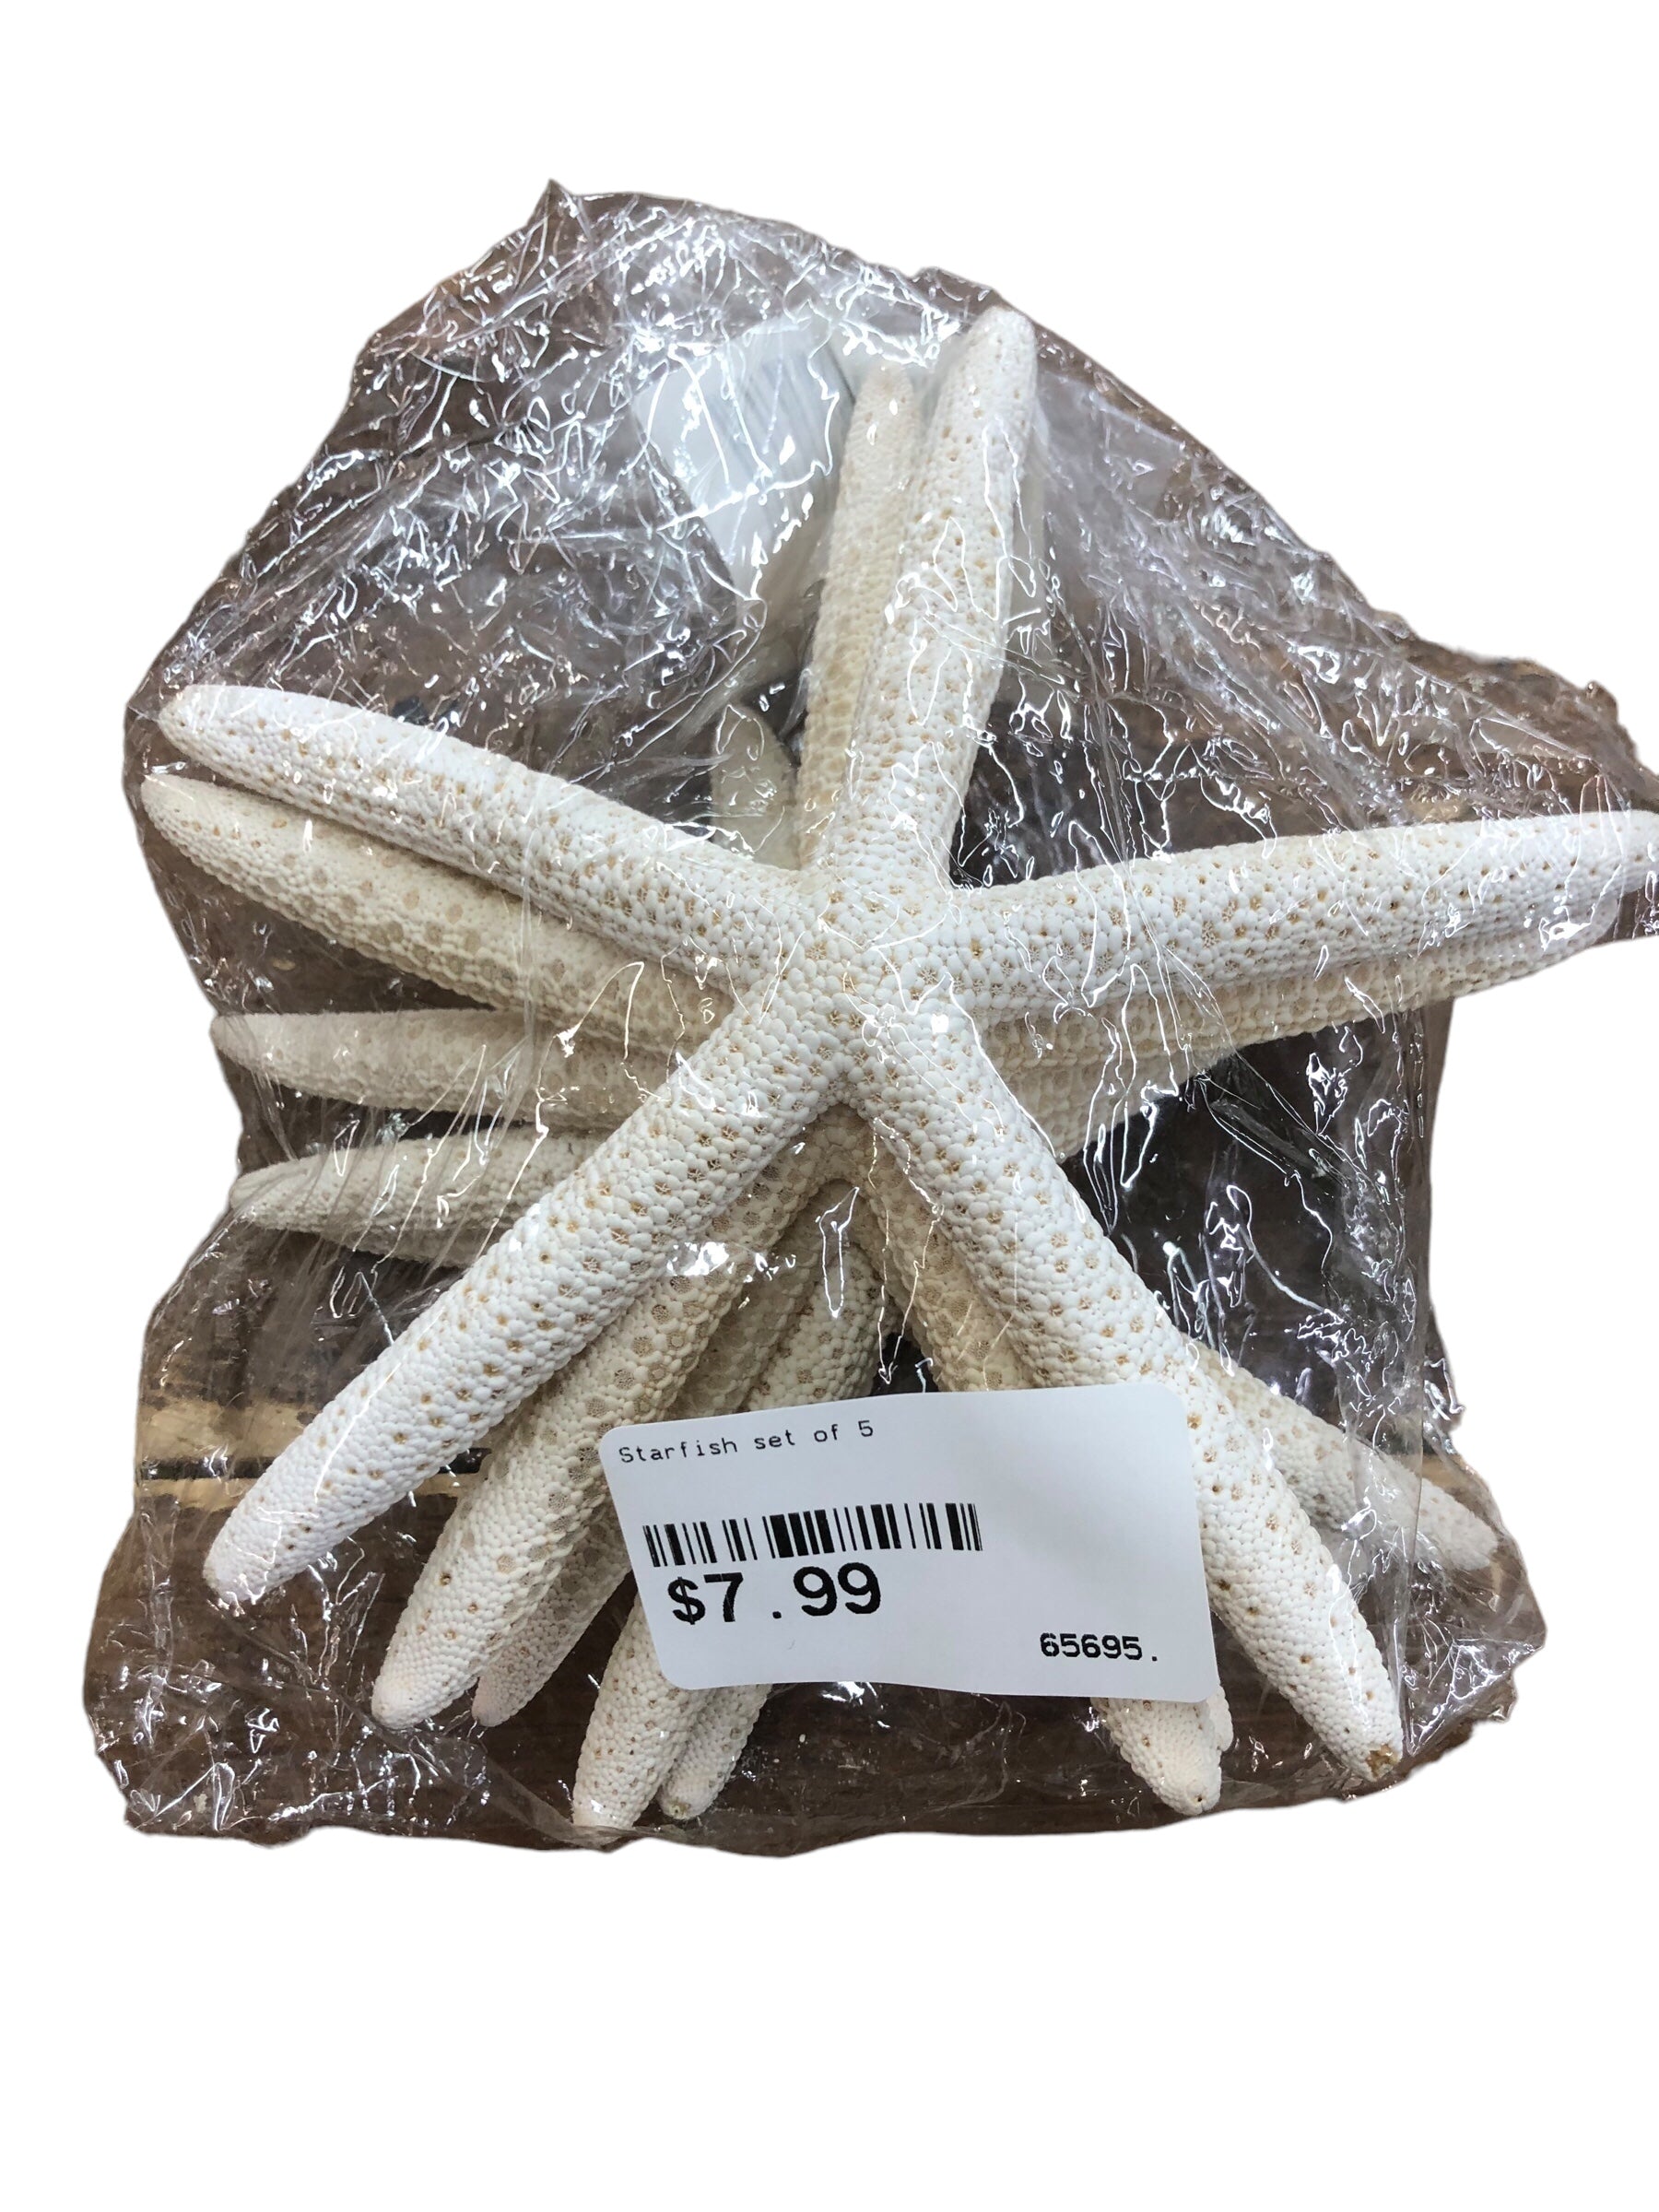 Starfish set of 5